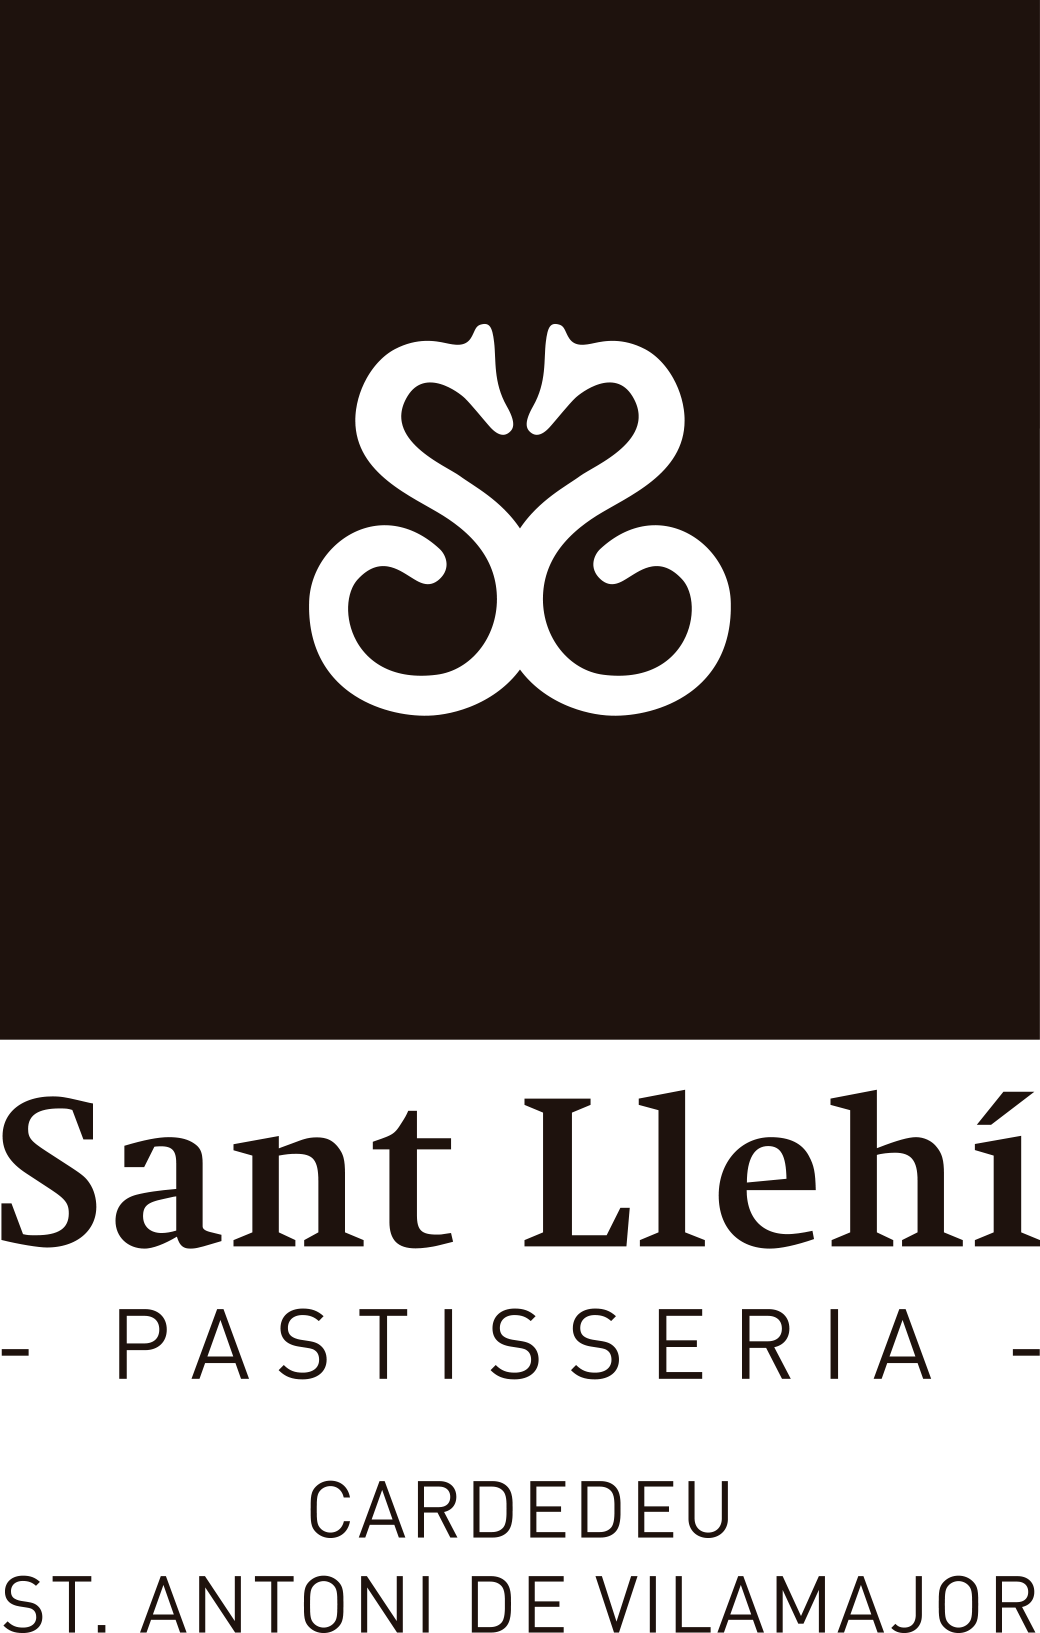 Pastisseria Sant Llehi